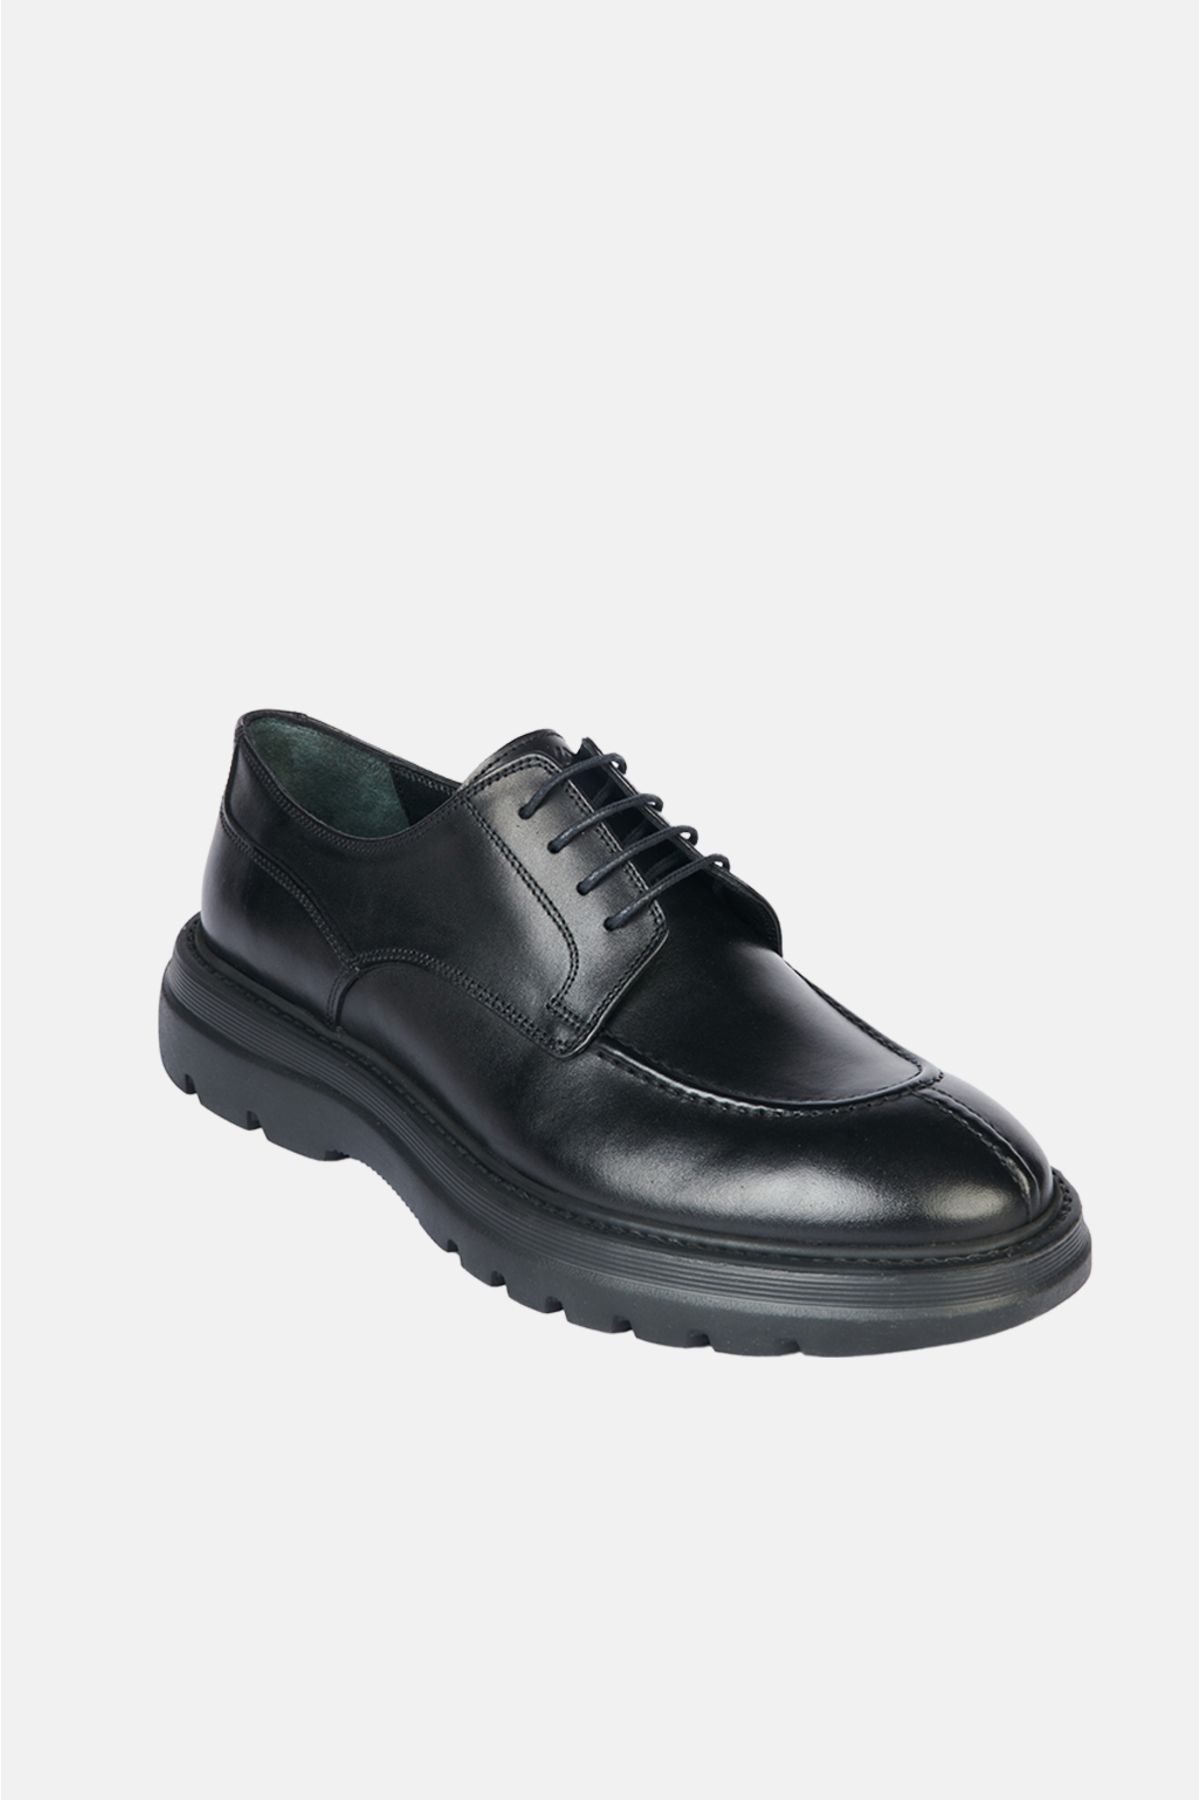 Avva Erkek Siyah %100 Deri Burnu Dikişli Bağcıklı Klasik Ayakkabı A32y8014